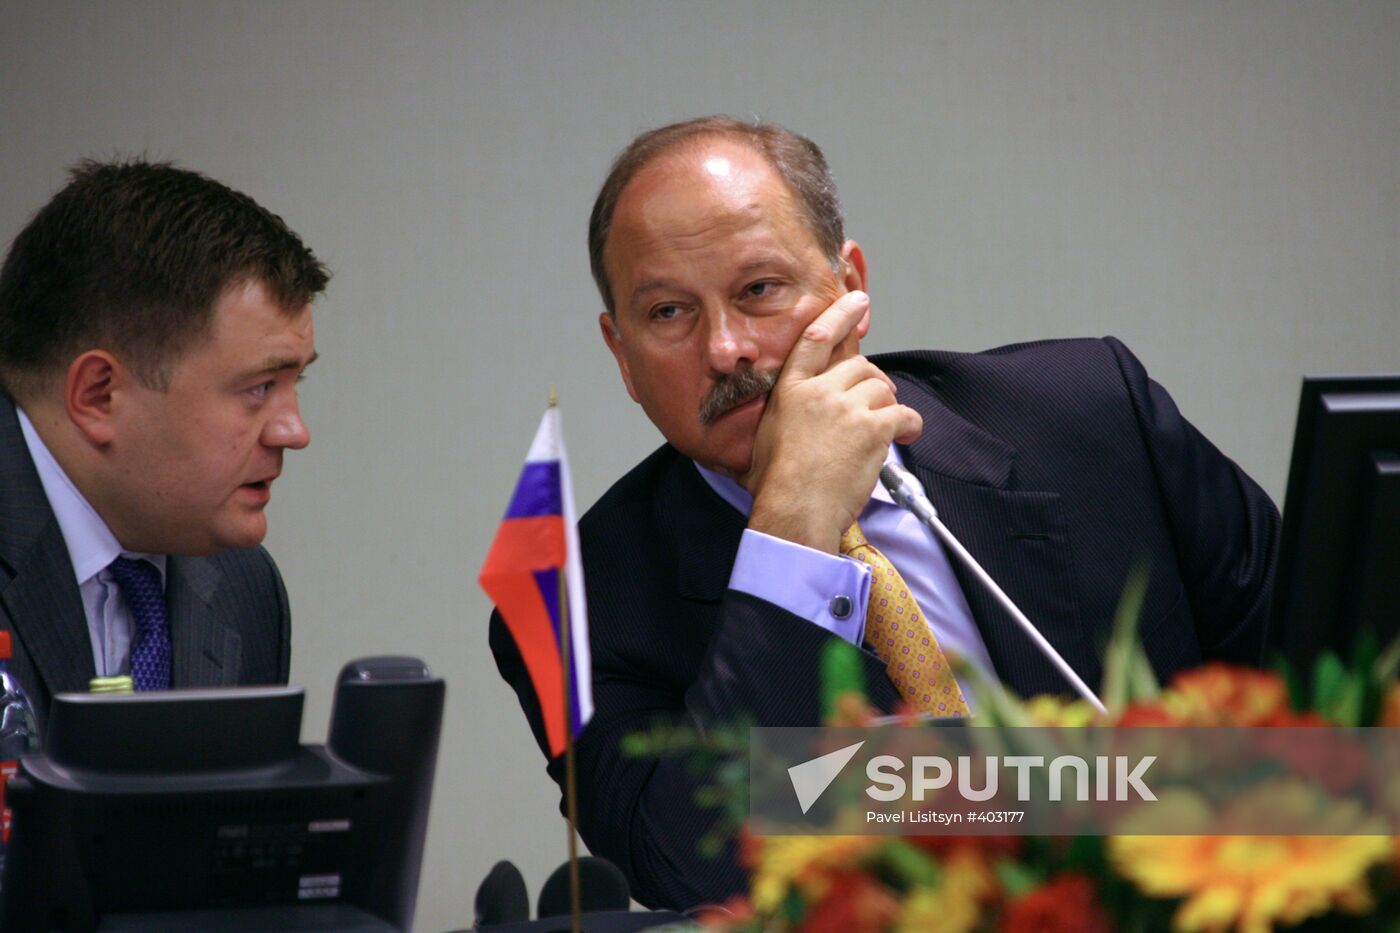 SCO summit in Yekaterinburg